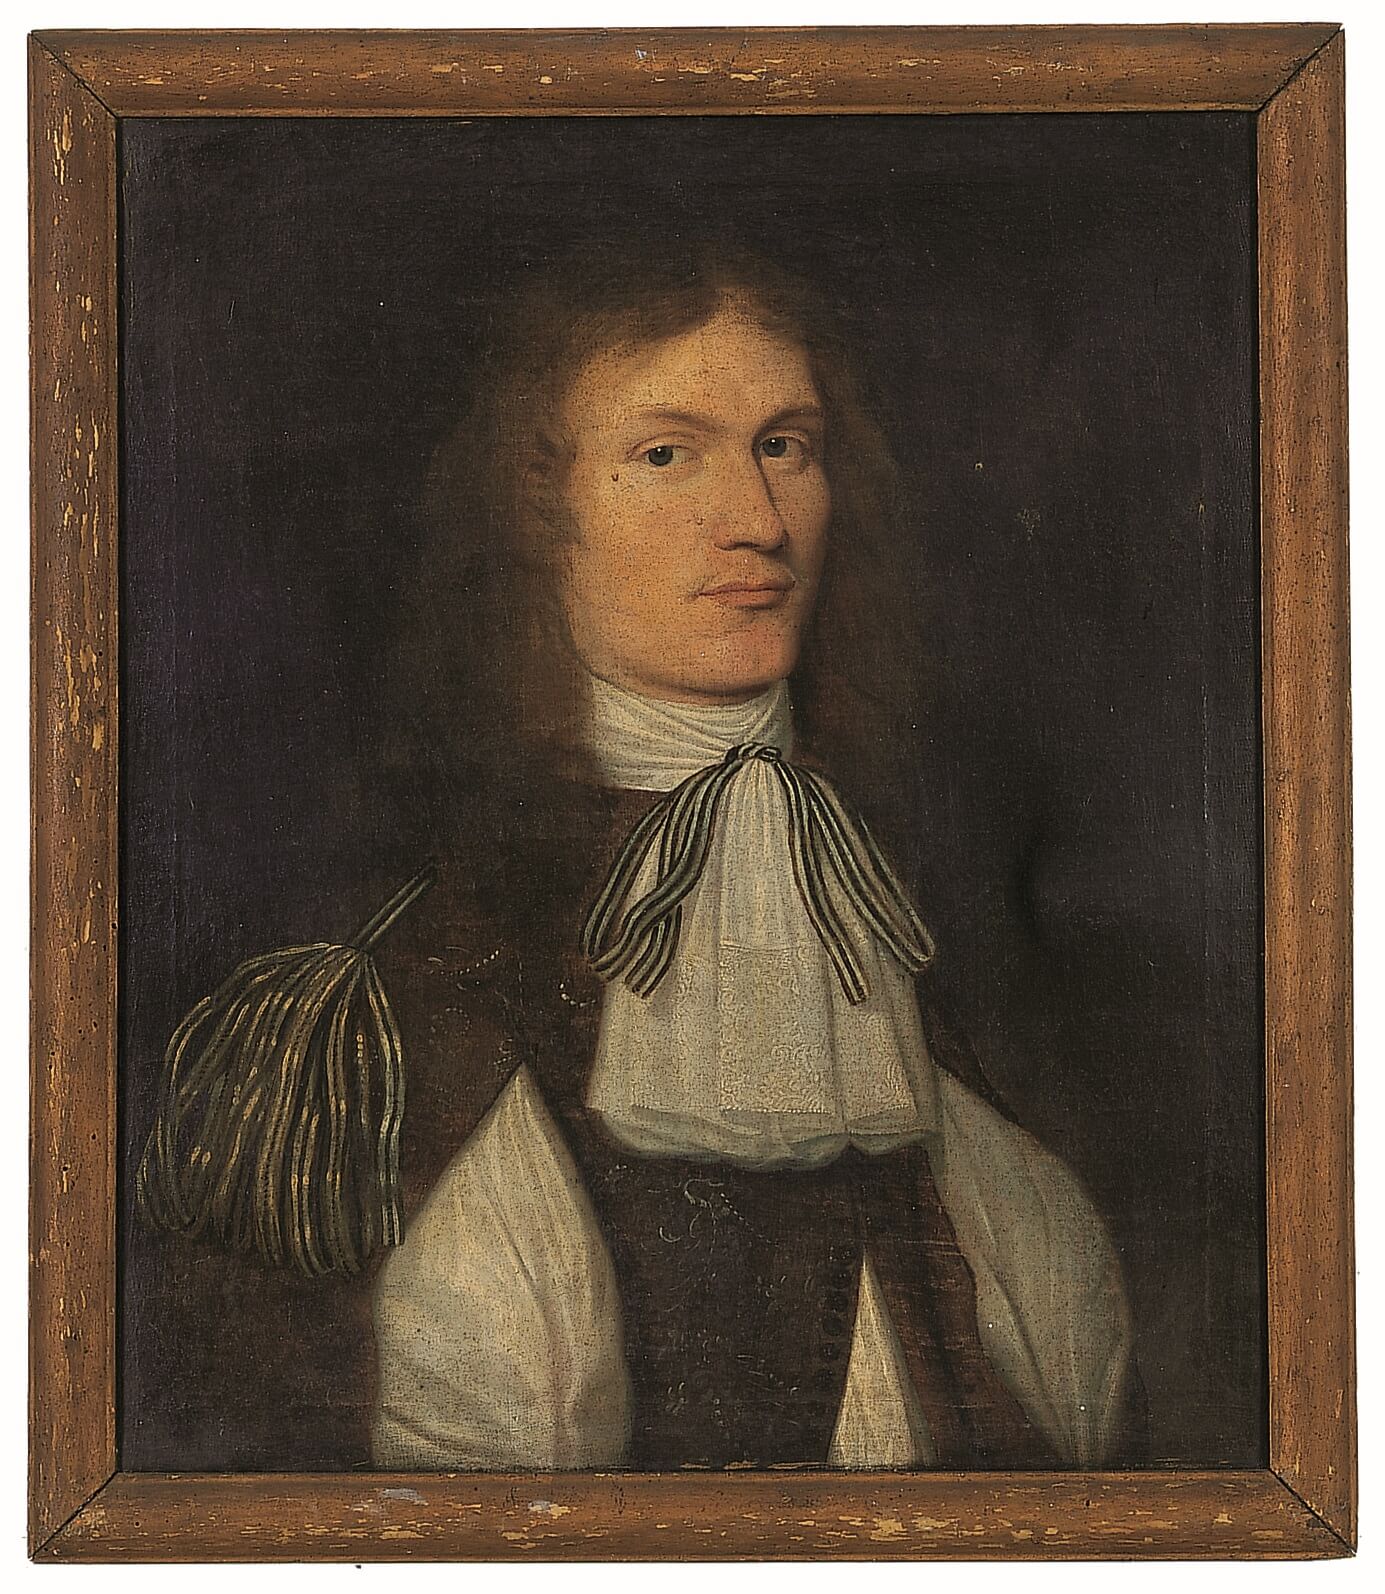 Philipp Carl v. Geuder-Rabensteiner (1636 - 1694), Öl LW, um 1680, Ra. 72 x 62 cm, ebg0380